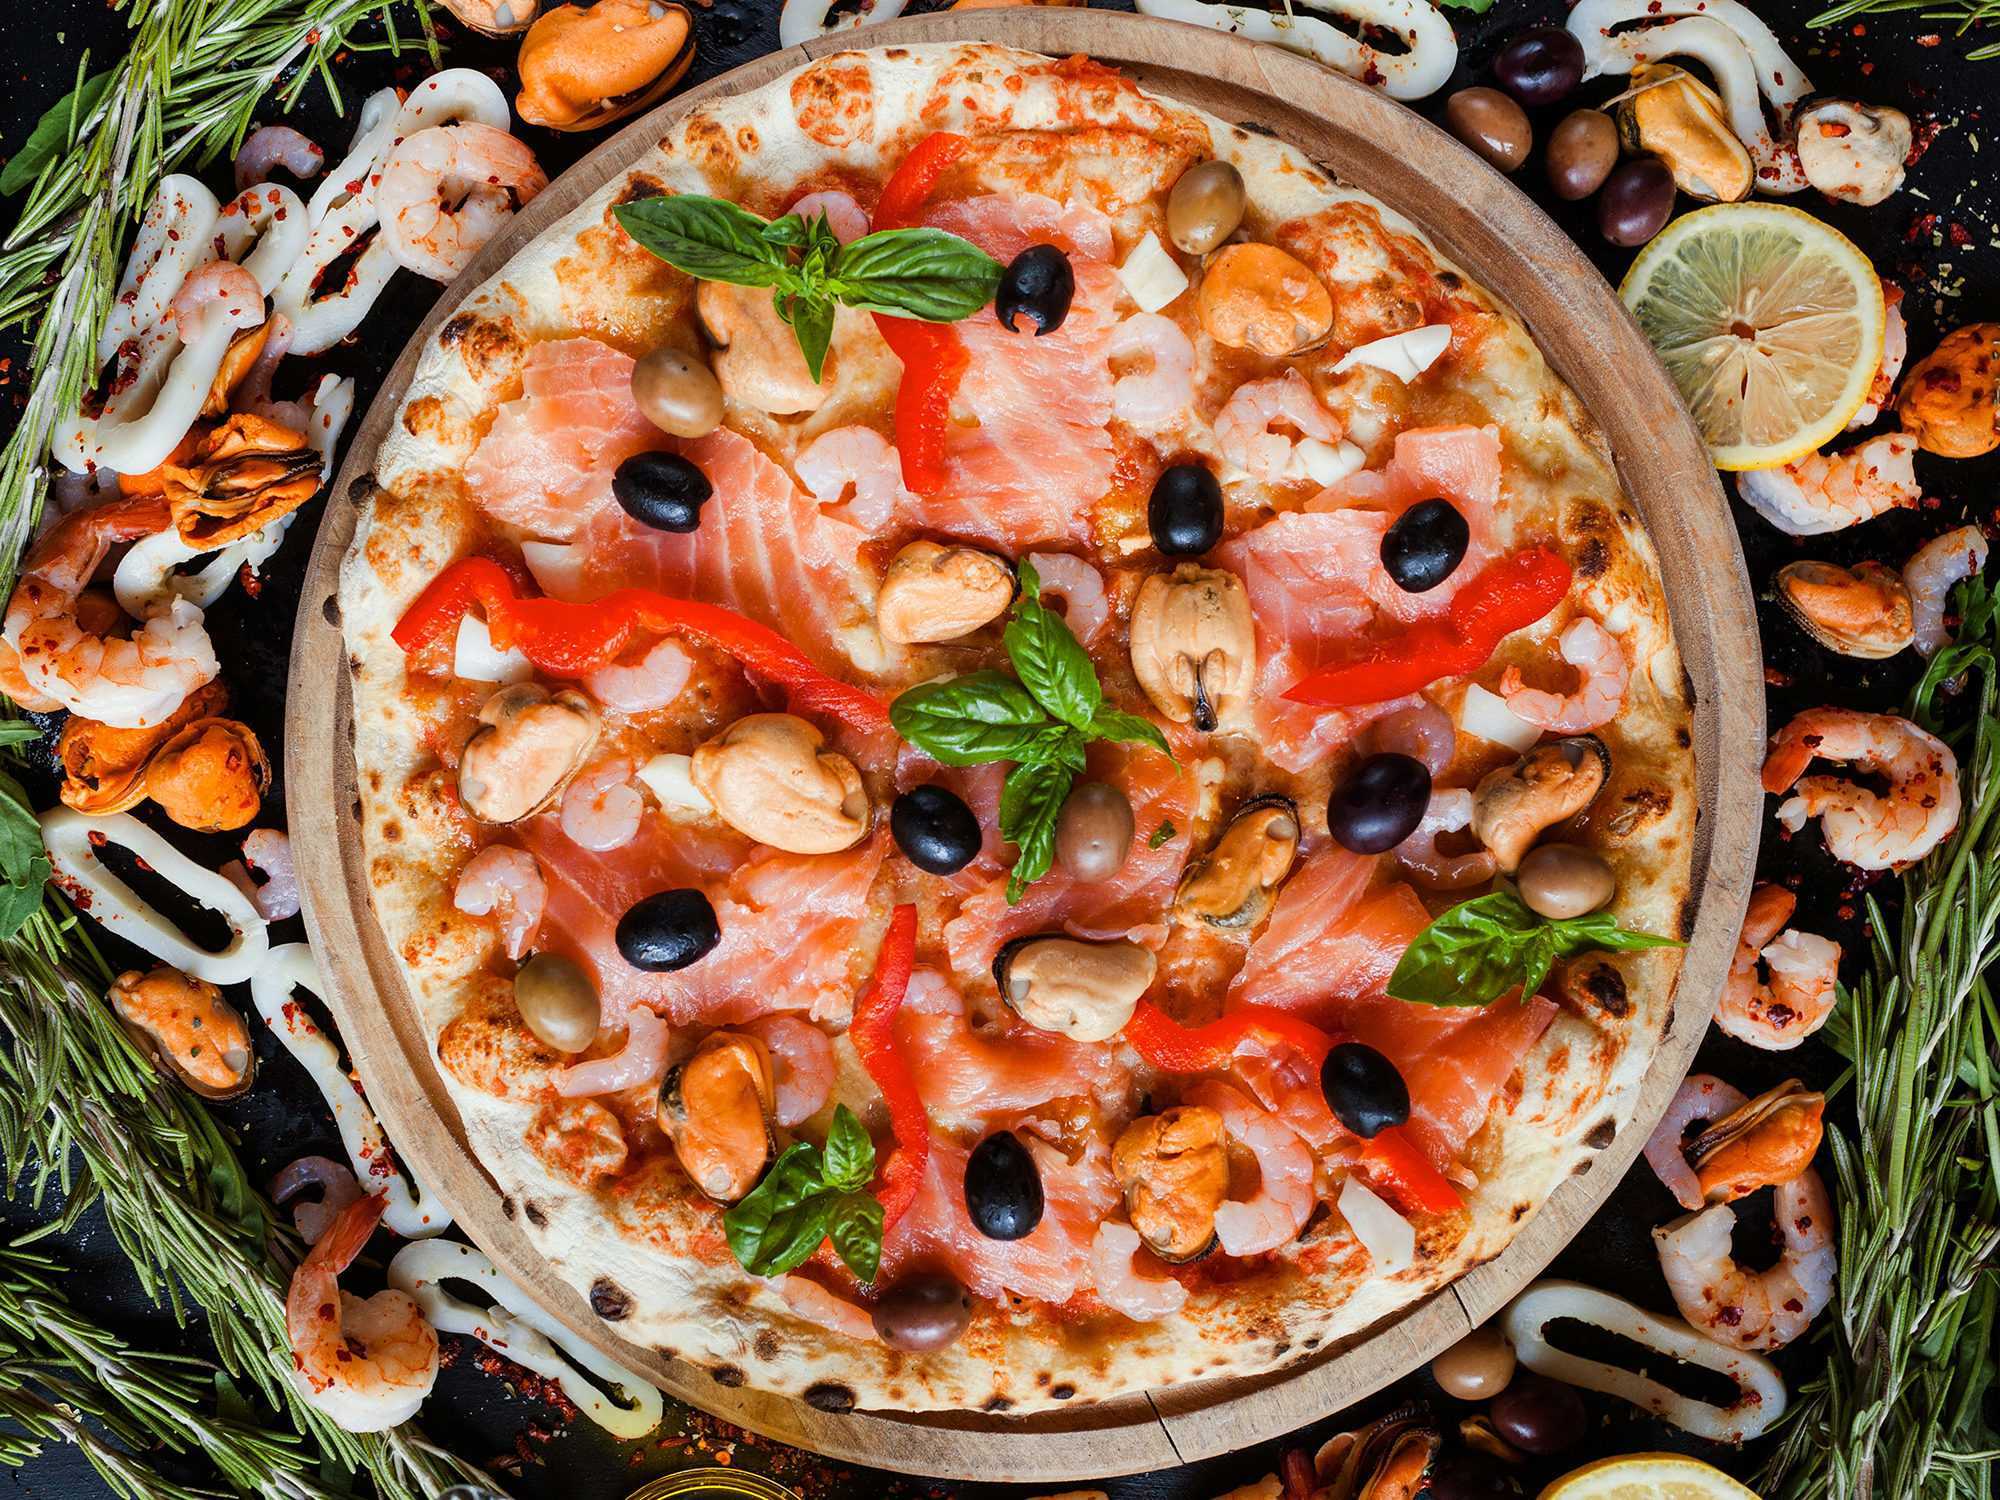 пицца с морепродуктами рецепт в домашних условиях в духовке со сливочным соусом (120) фото